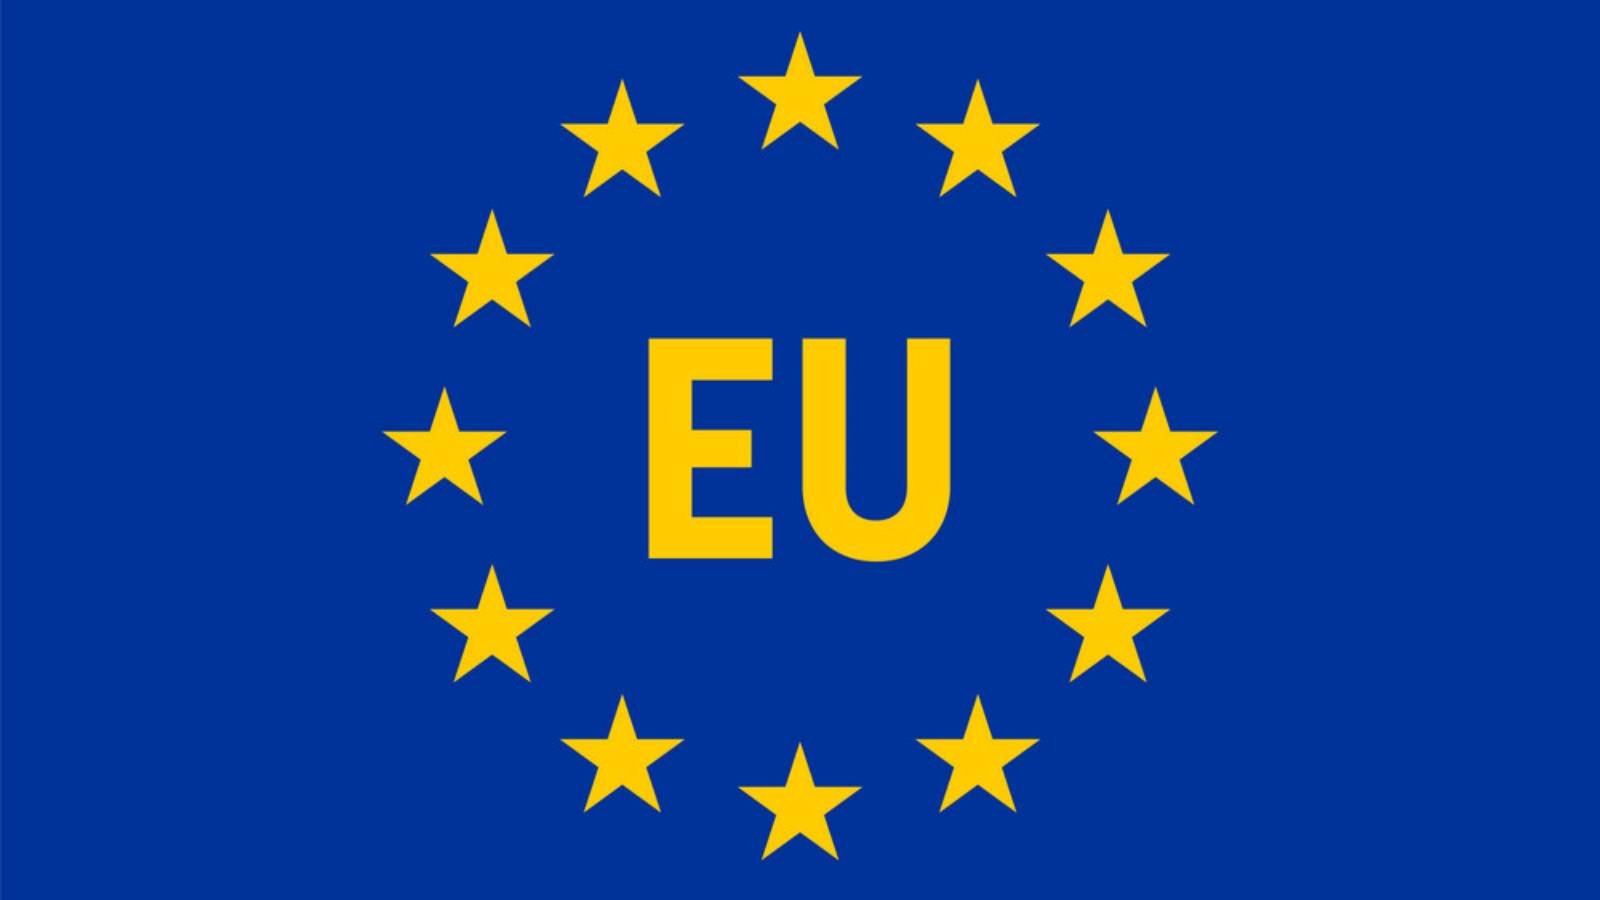 La Comisión Europea apoya la implementación de infraestructuras digitales seguras y rápidas